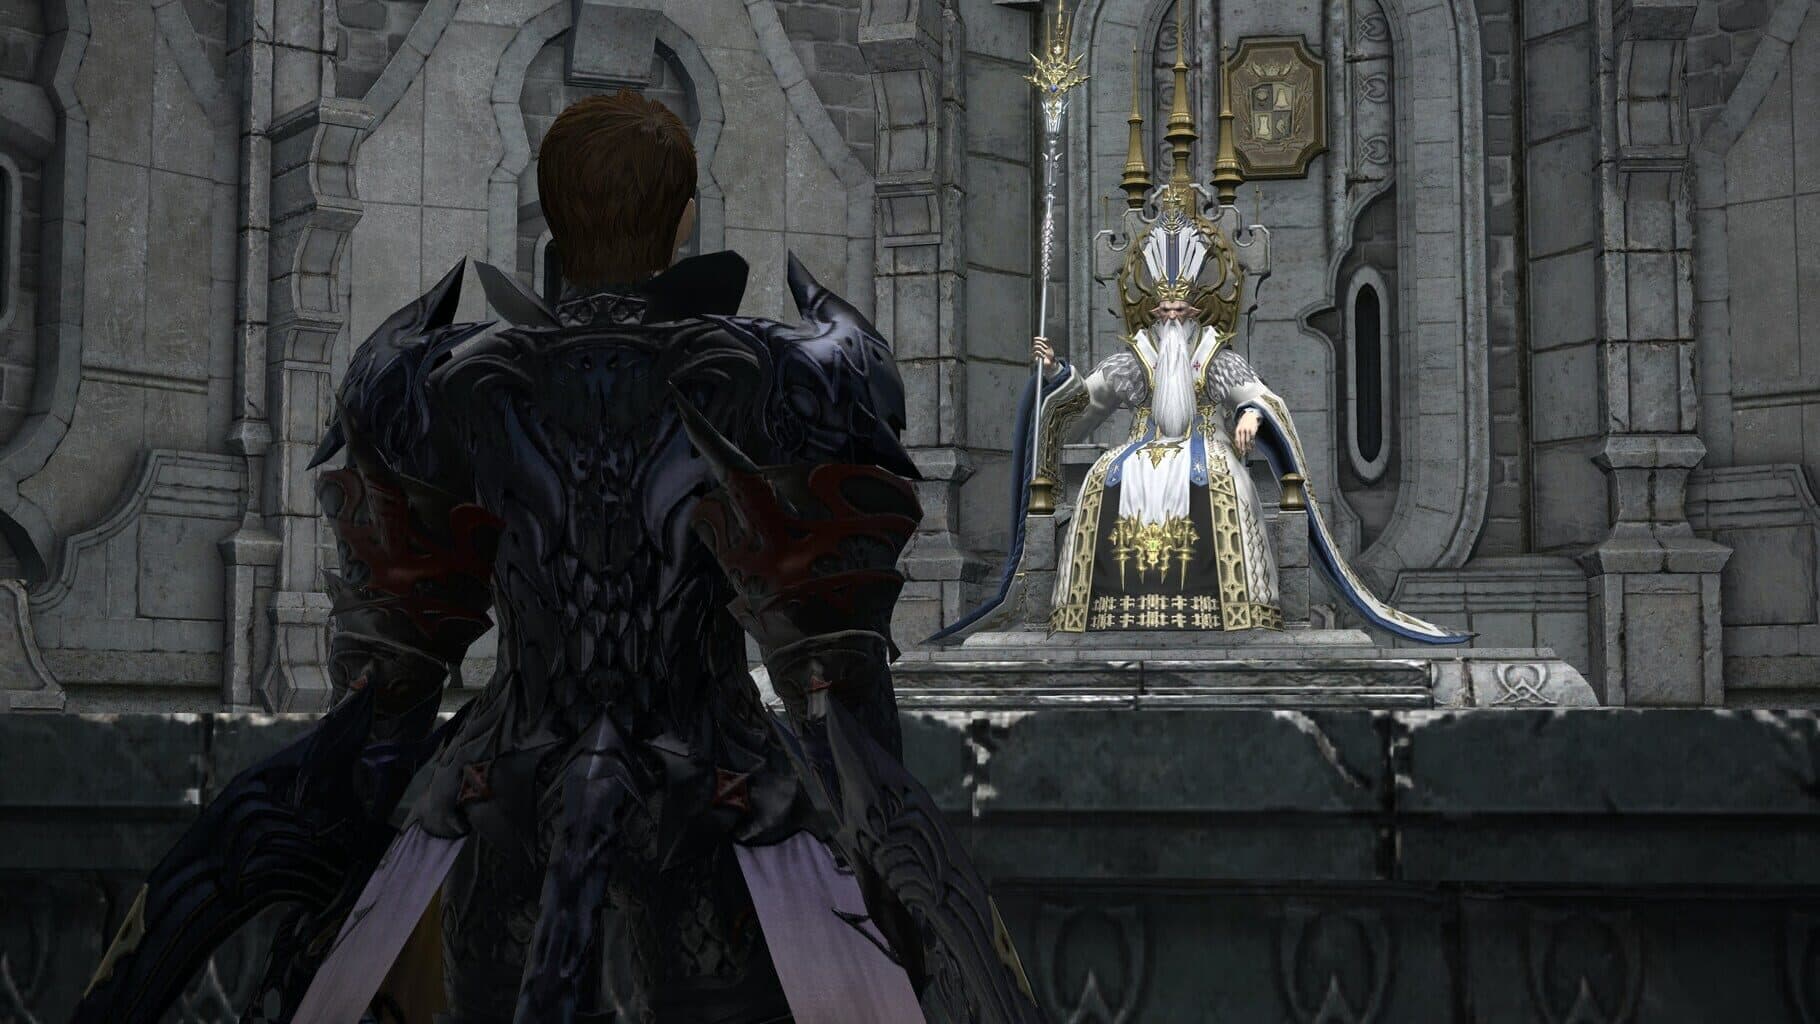 Final Fantasy XIV Online: Starter Edition Image